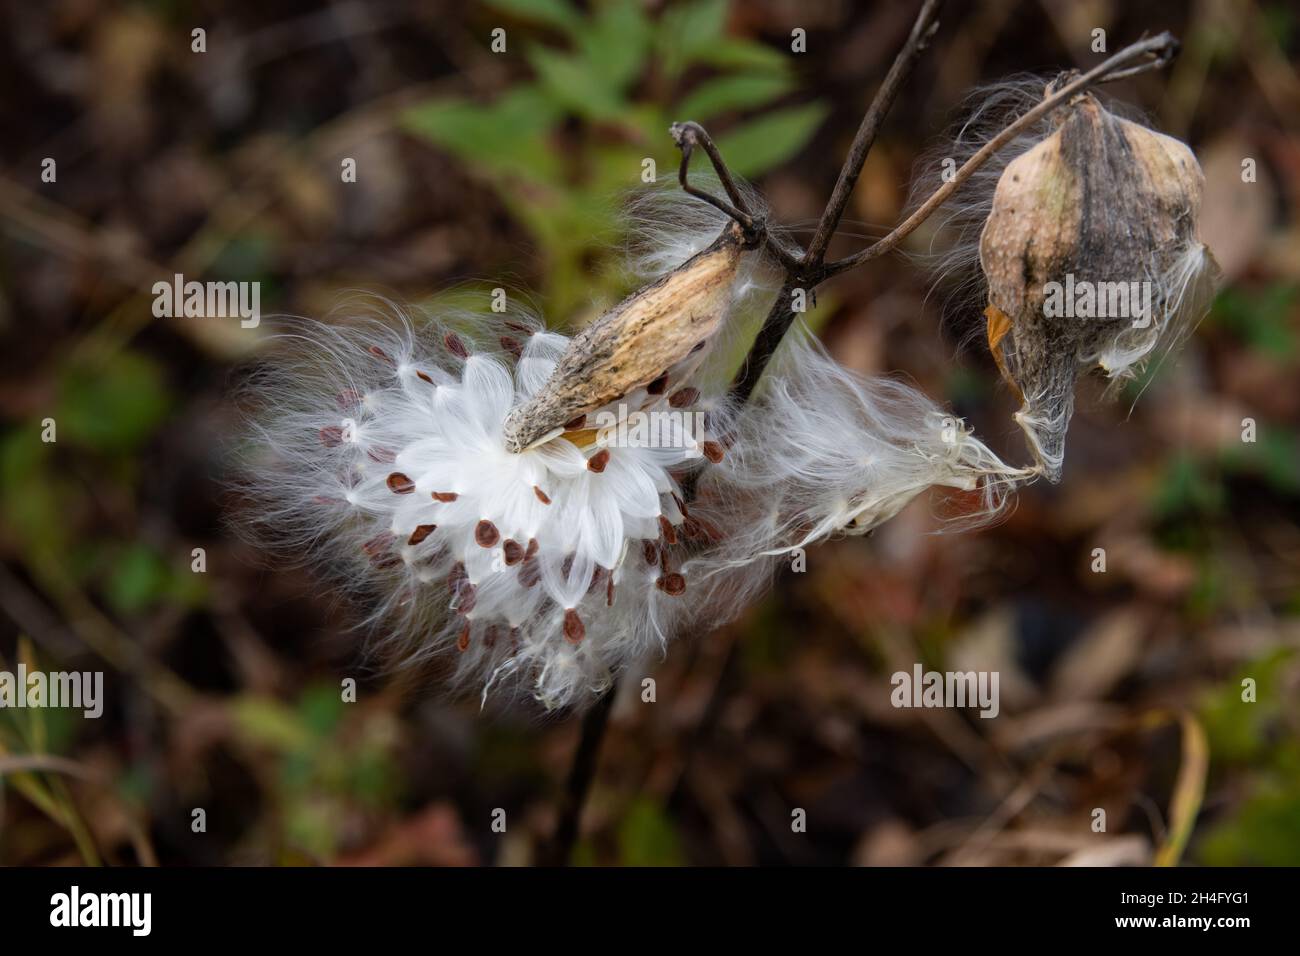 Eine gewöhnliche Milchkrautpflanze, Asclepias syriaca, Samenschote oder Follikel, die aufplatzt, um Samen im Wind in den Adirondack Mountains, NY, zu verbreiten Stockfoto